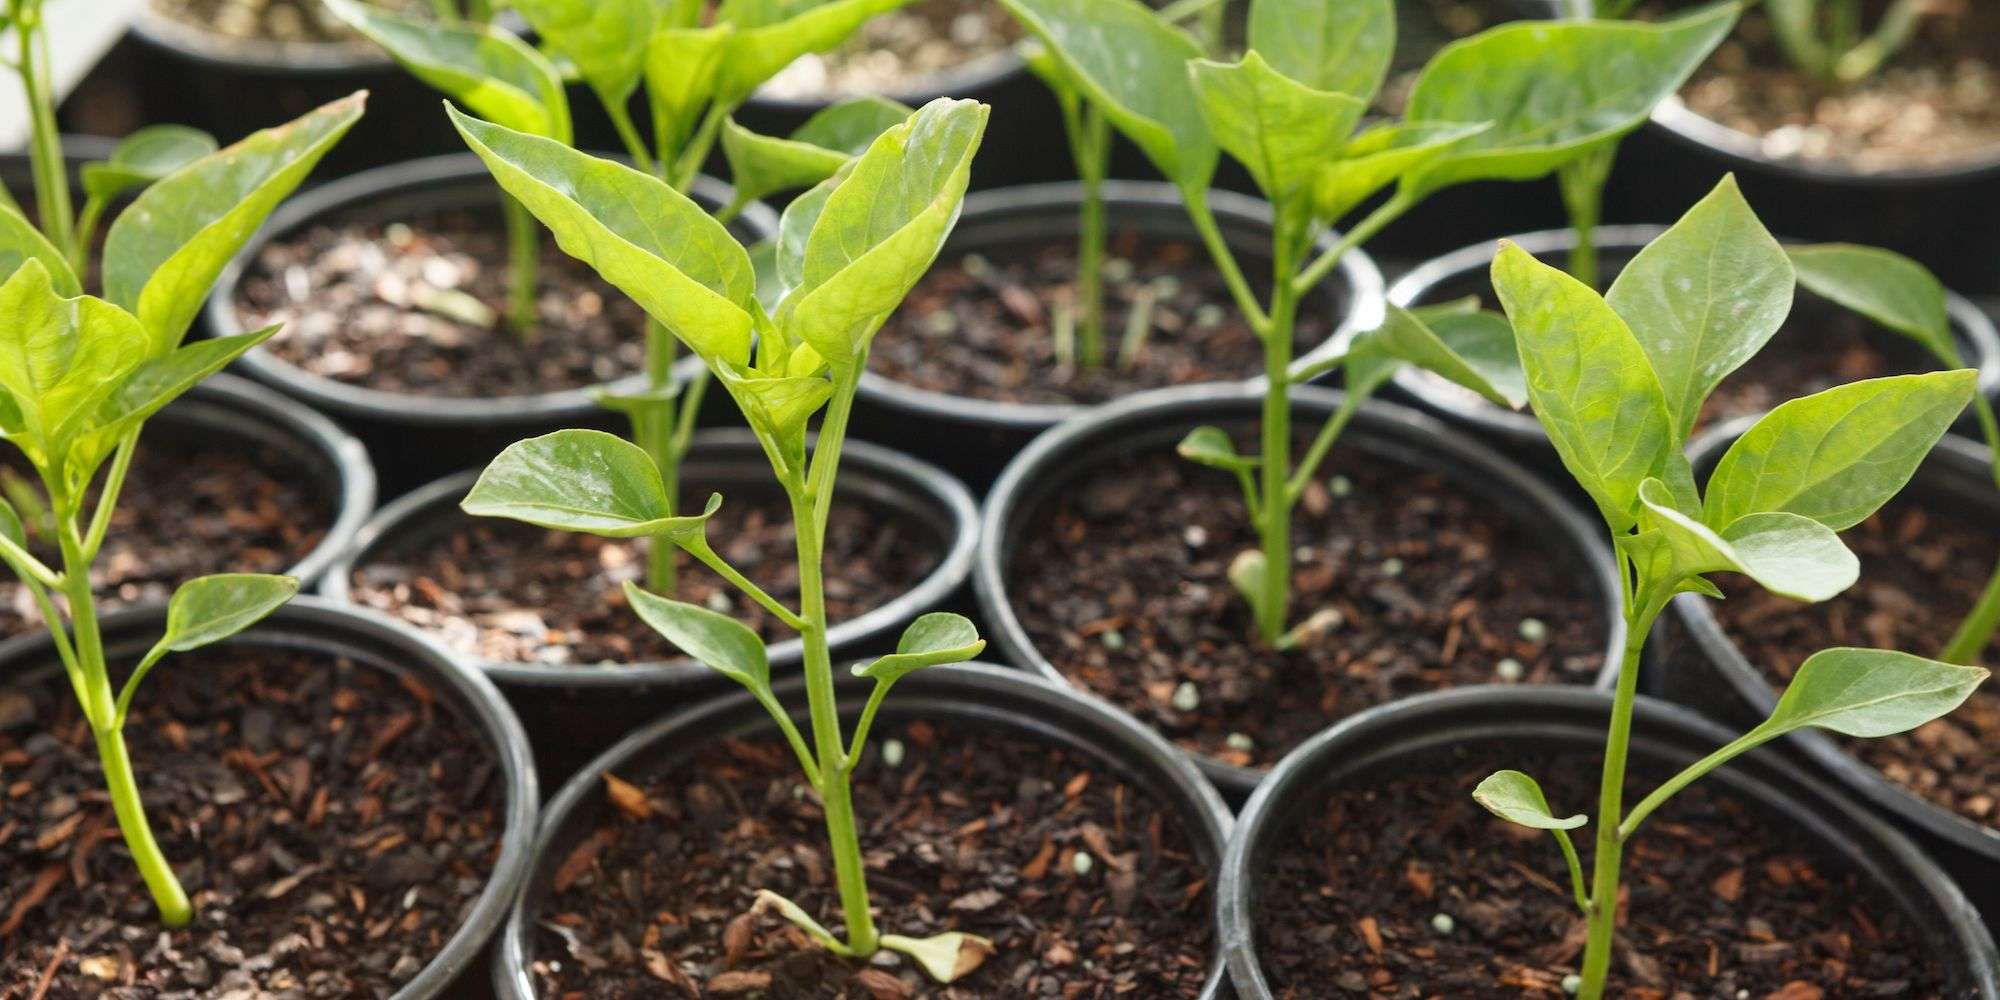 Pepper seedlings in 3" pots in a group